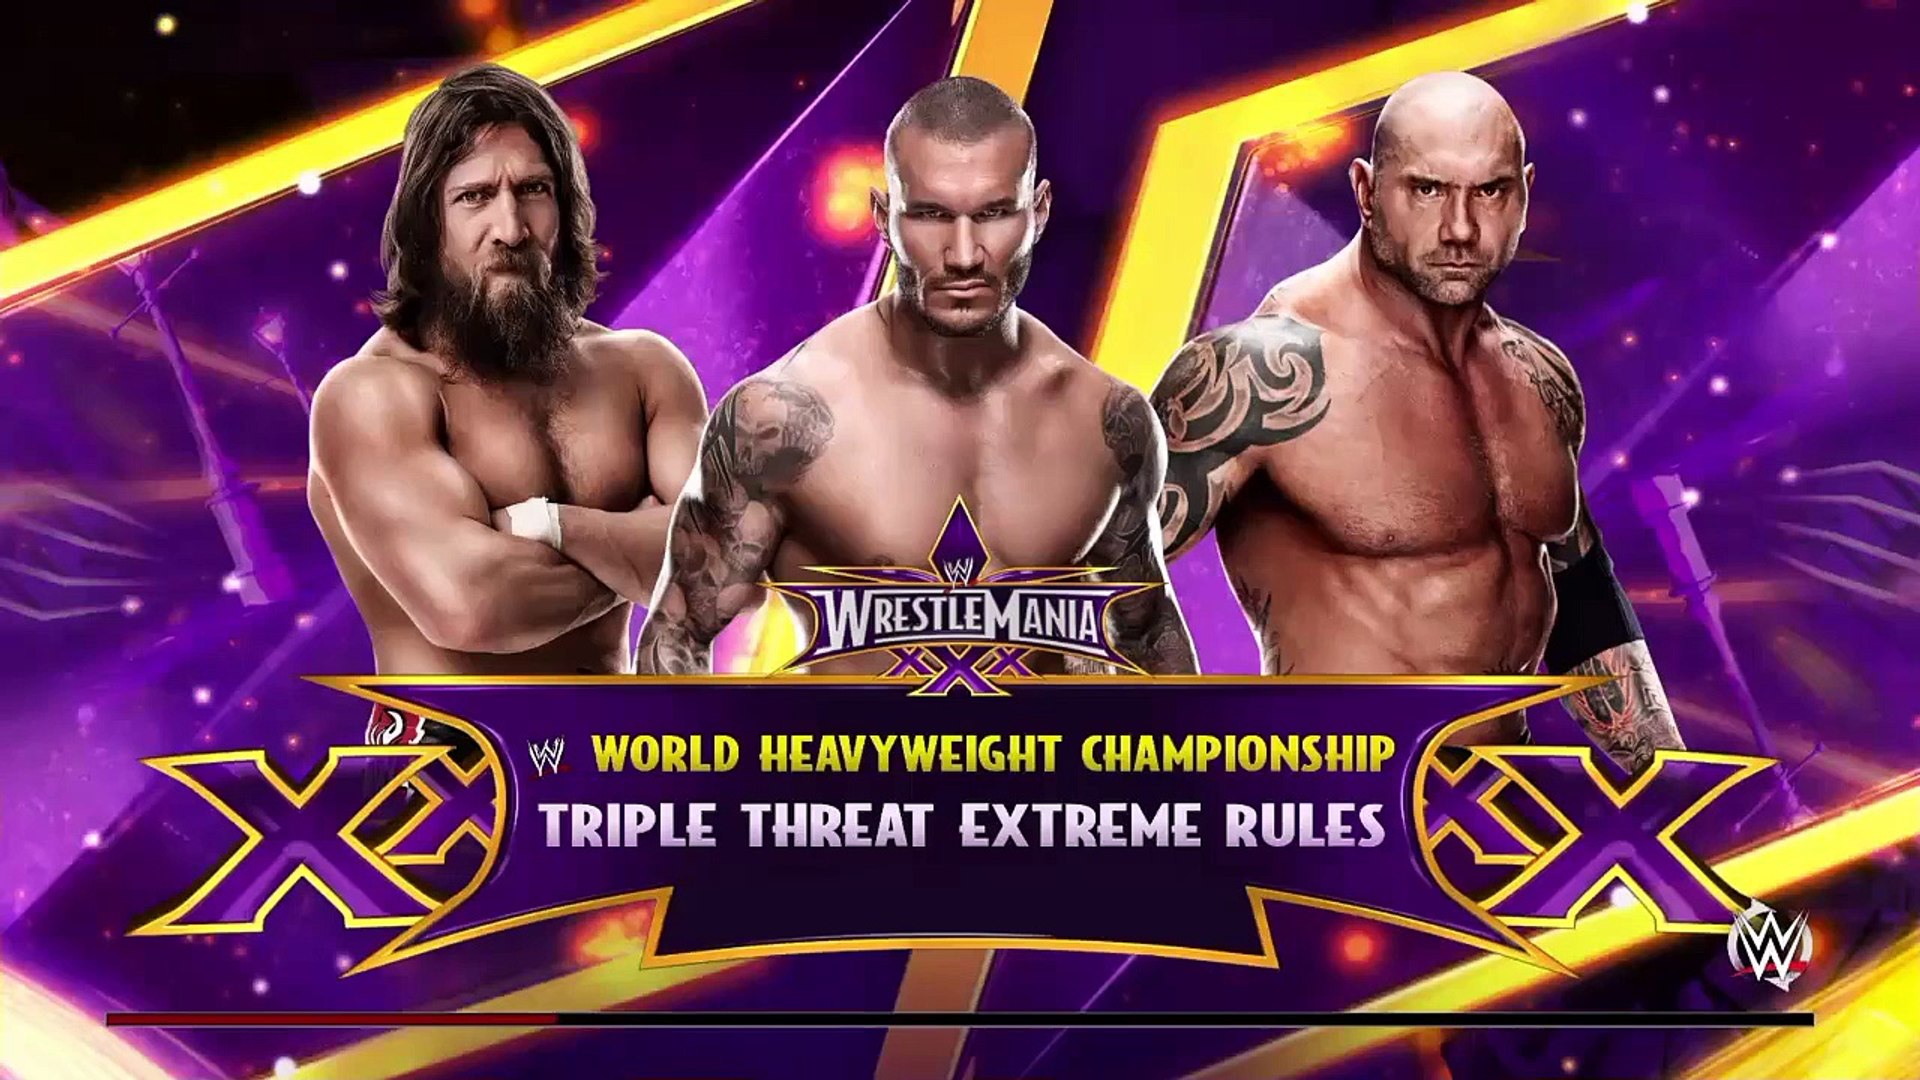 WWE 2K RIVALRIES - Daniel Bryan vs. Randy Orton vs. Batista | WWE  Wrestlemania 30 | - video Dailymotion